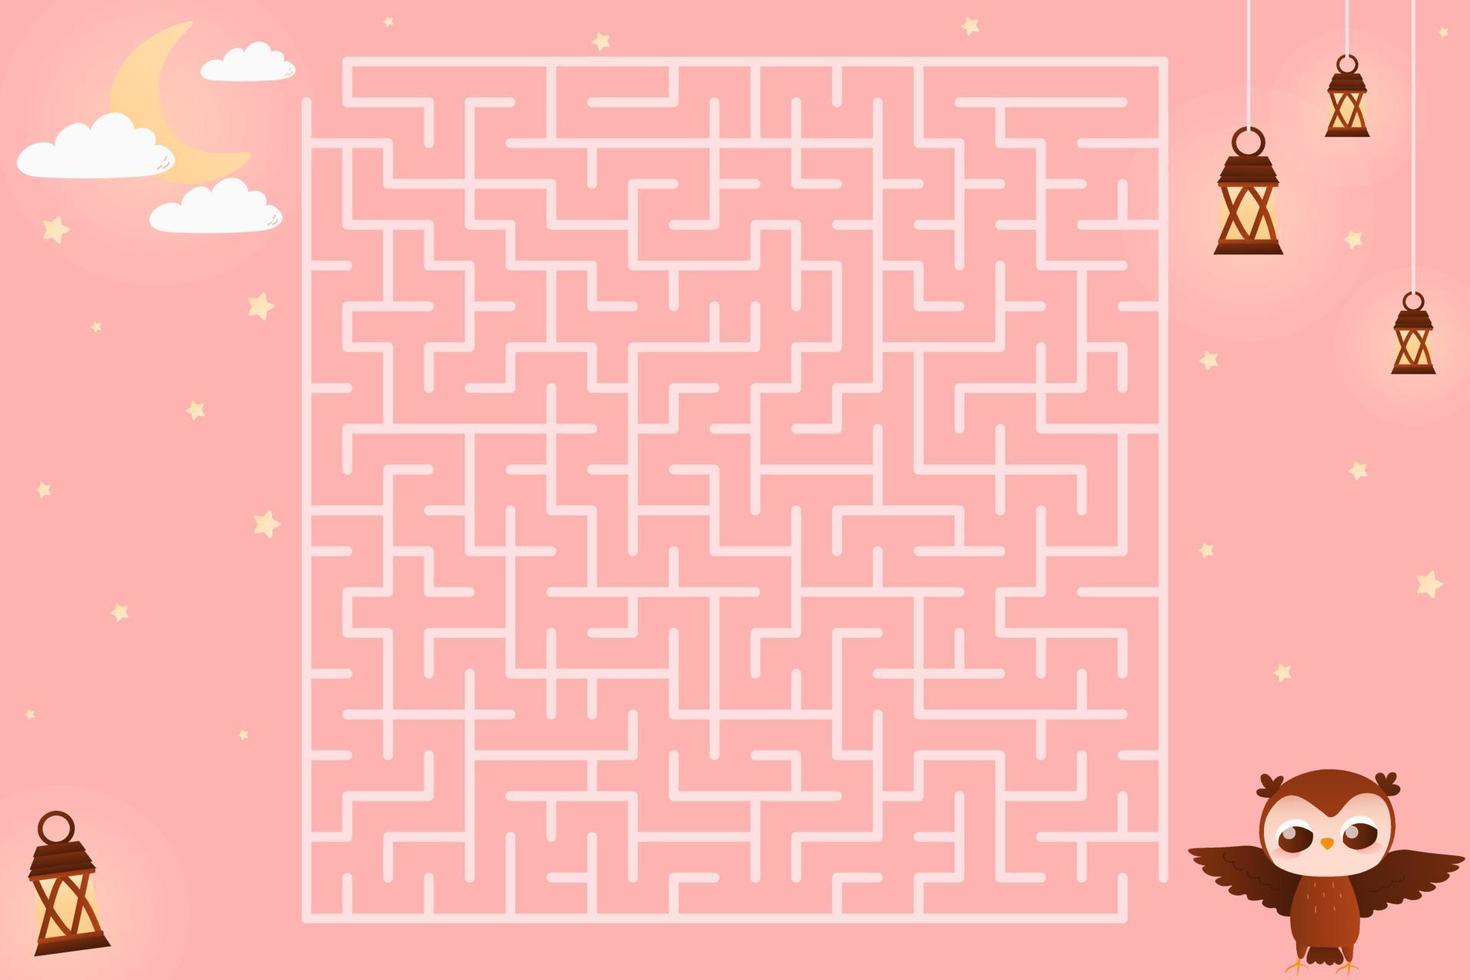 färgrik unge labyrint med söt Uggla karaktär, hjälp finf sätt till de måne på rosa bakgrund i tecknad serie stil vektor